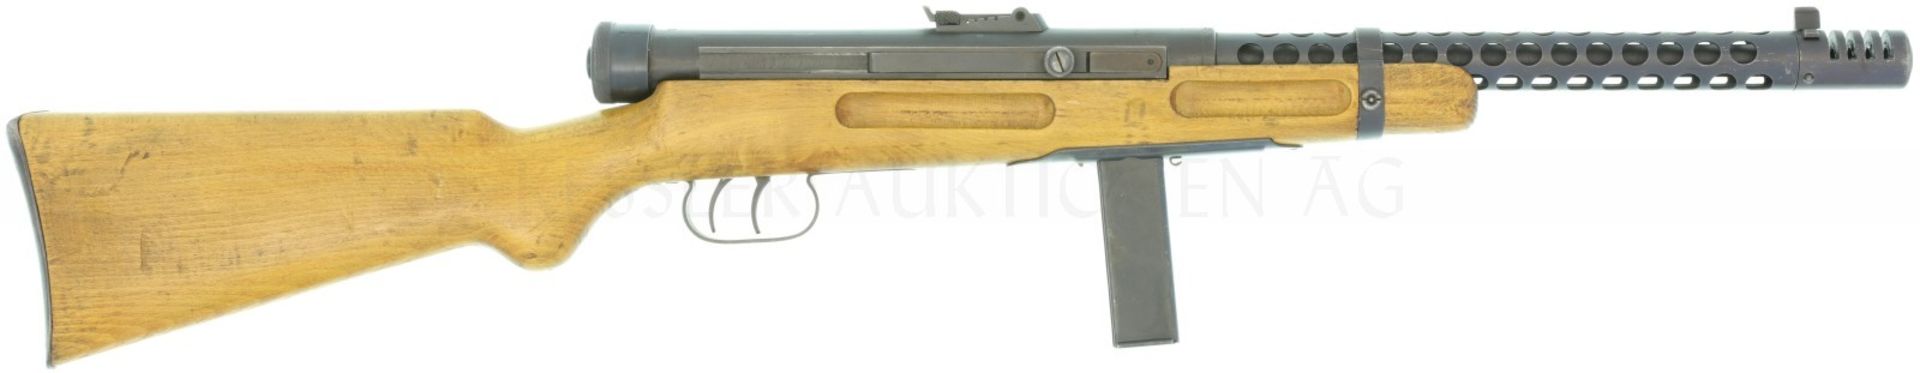 Maschinenpistole, Beretta Mod. 1938A, Kal. 9mmP